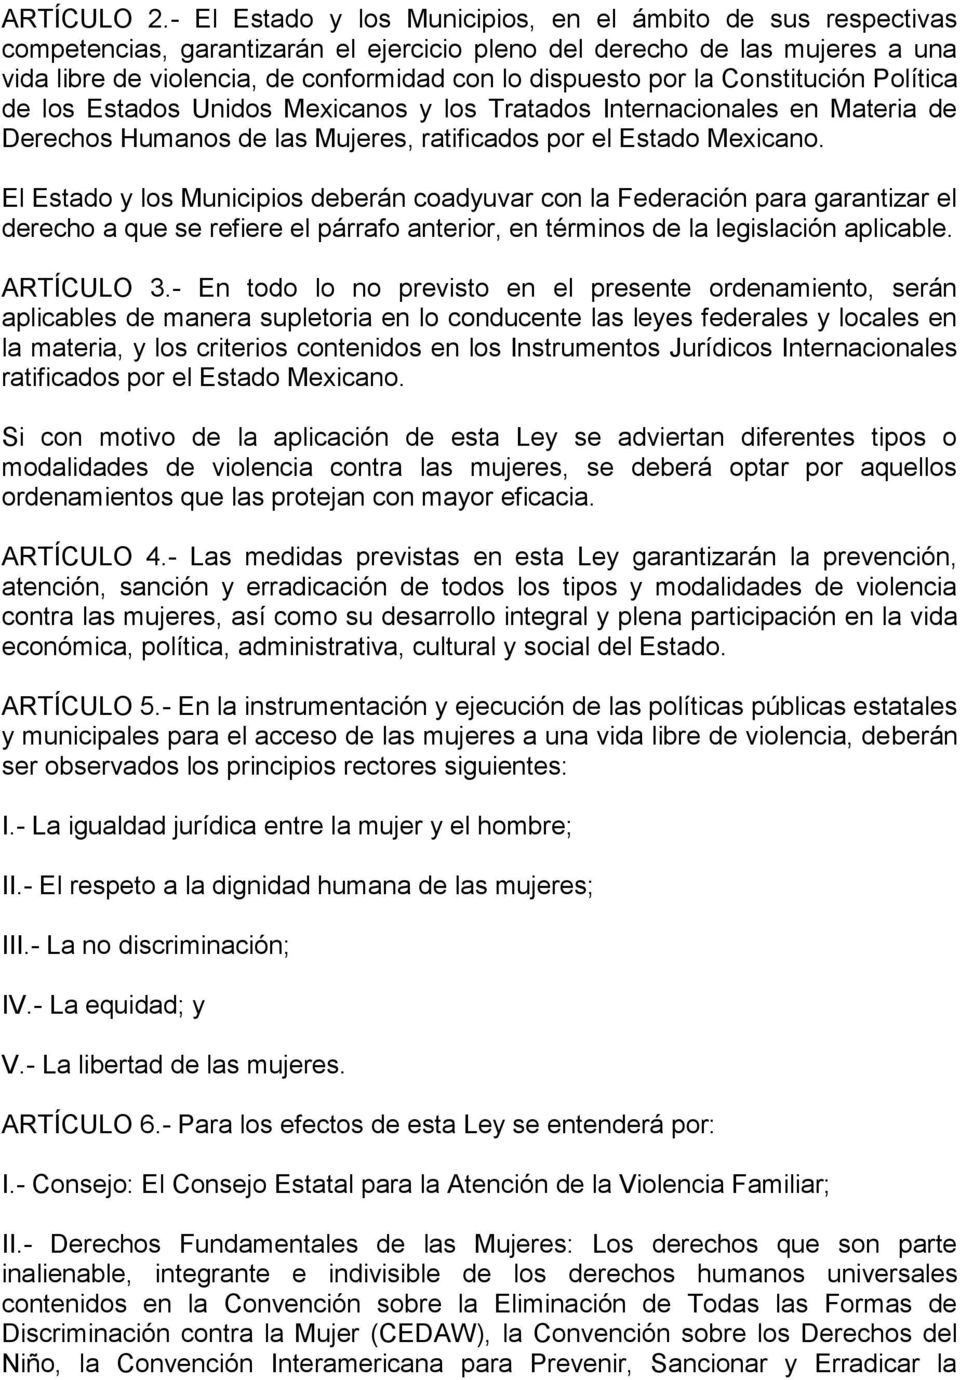 por la Constitución Política de los Estados Unidos Mexicanos y los Tratados Internacionales en Materia de Derechos Humanos de las Mujeres, ratificados por el Estado Mexicano.